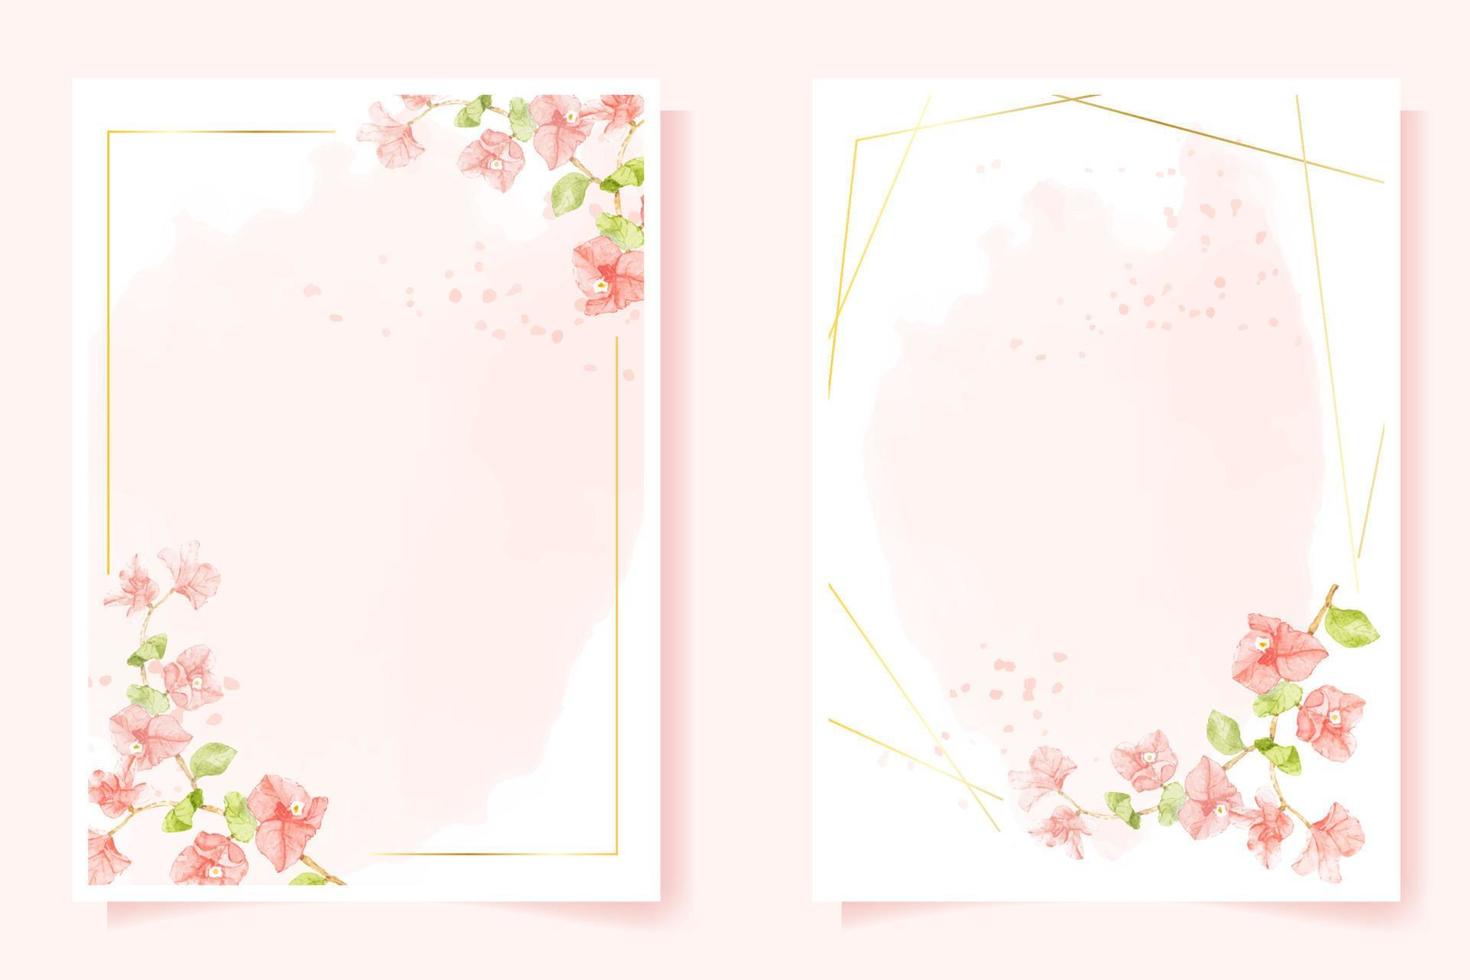 bouganville rosa dell'acquerello con cornice dorata per la raccolta del modello 5x7 della carta dell'invito di compleanno o di matrimonio vettore